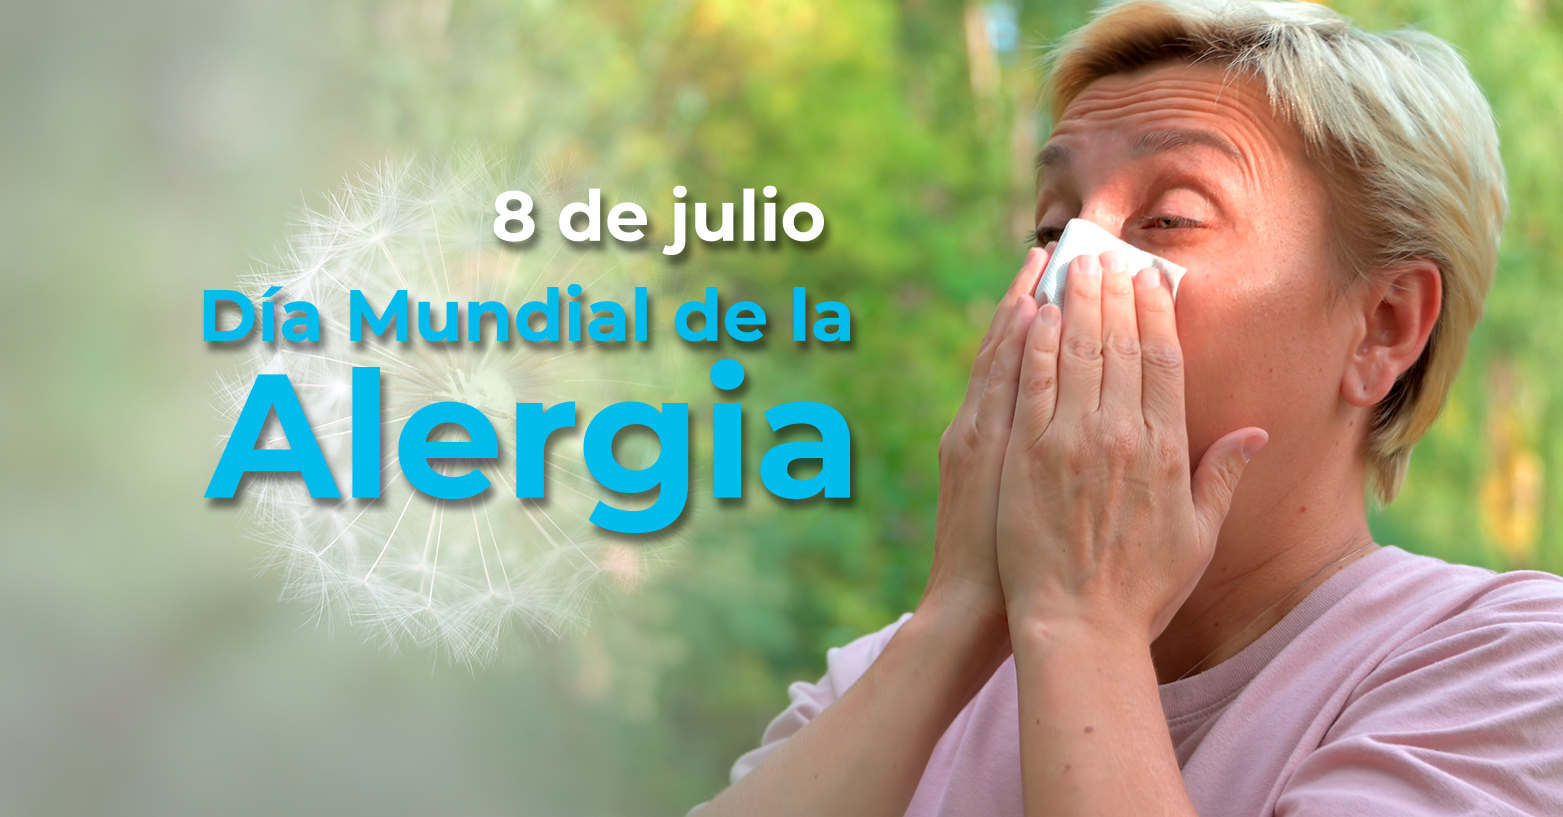 Día Mundial de la Alergia | 8 de julio